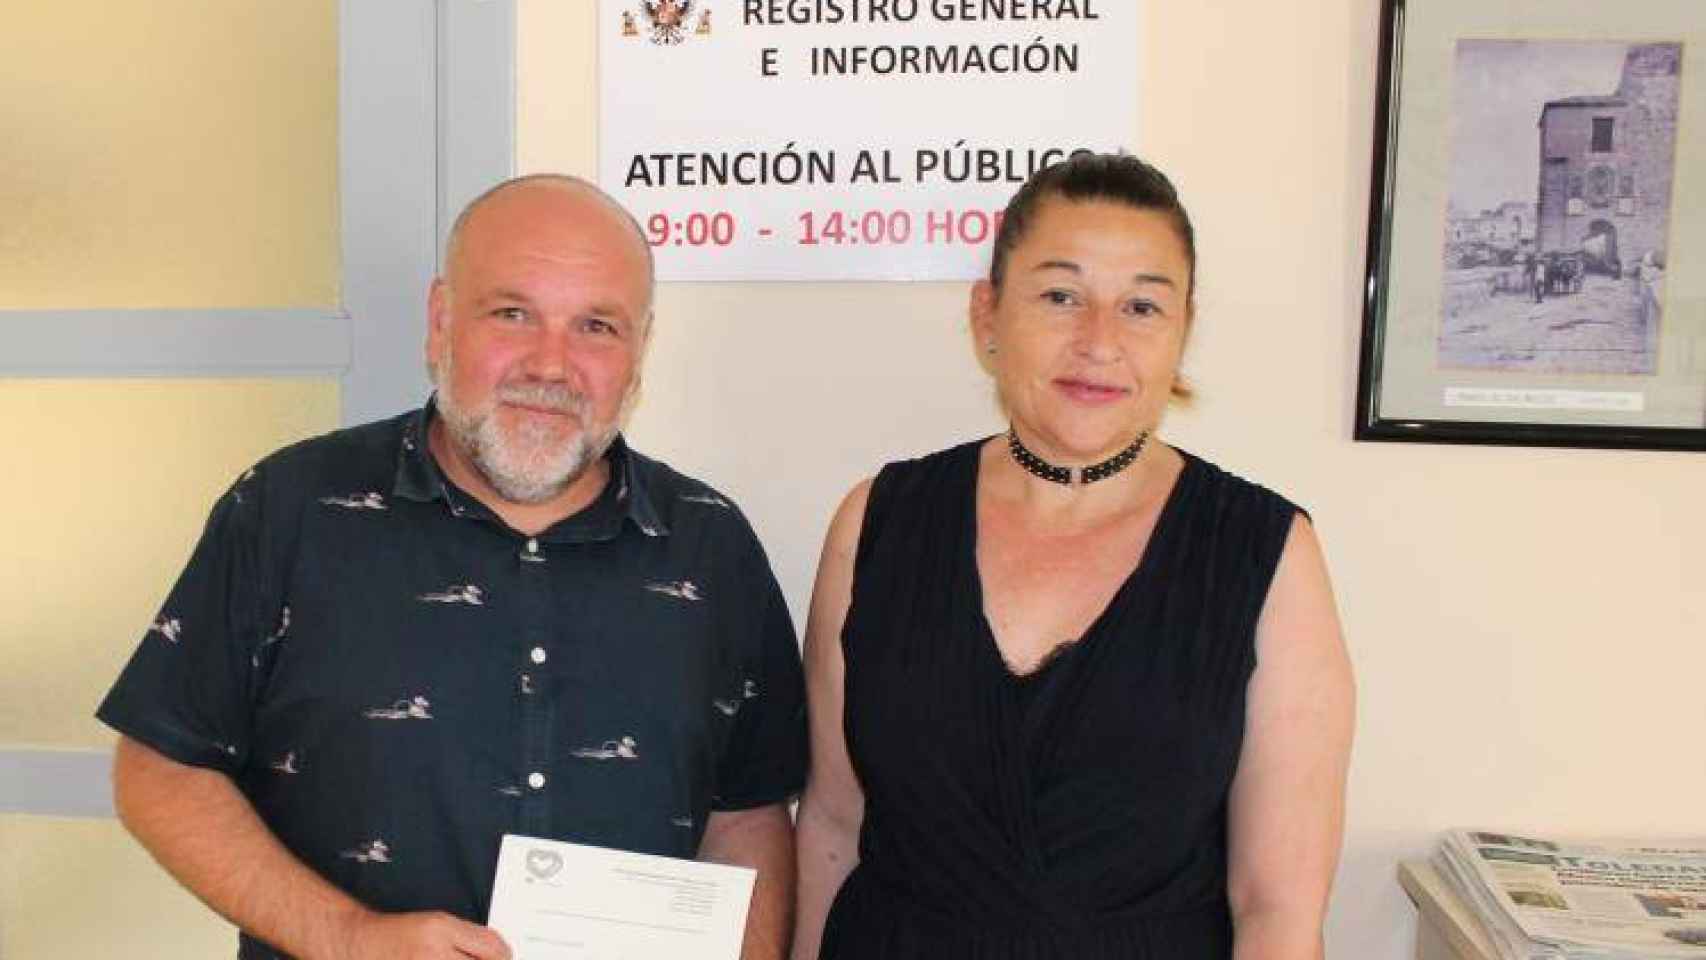 José María Fernández y Olga Ávalos, concejales de IU en el ayuntamiento de Toledo